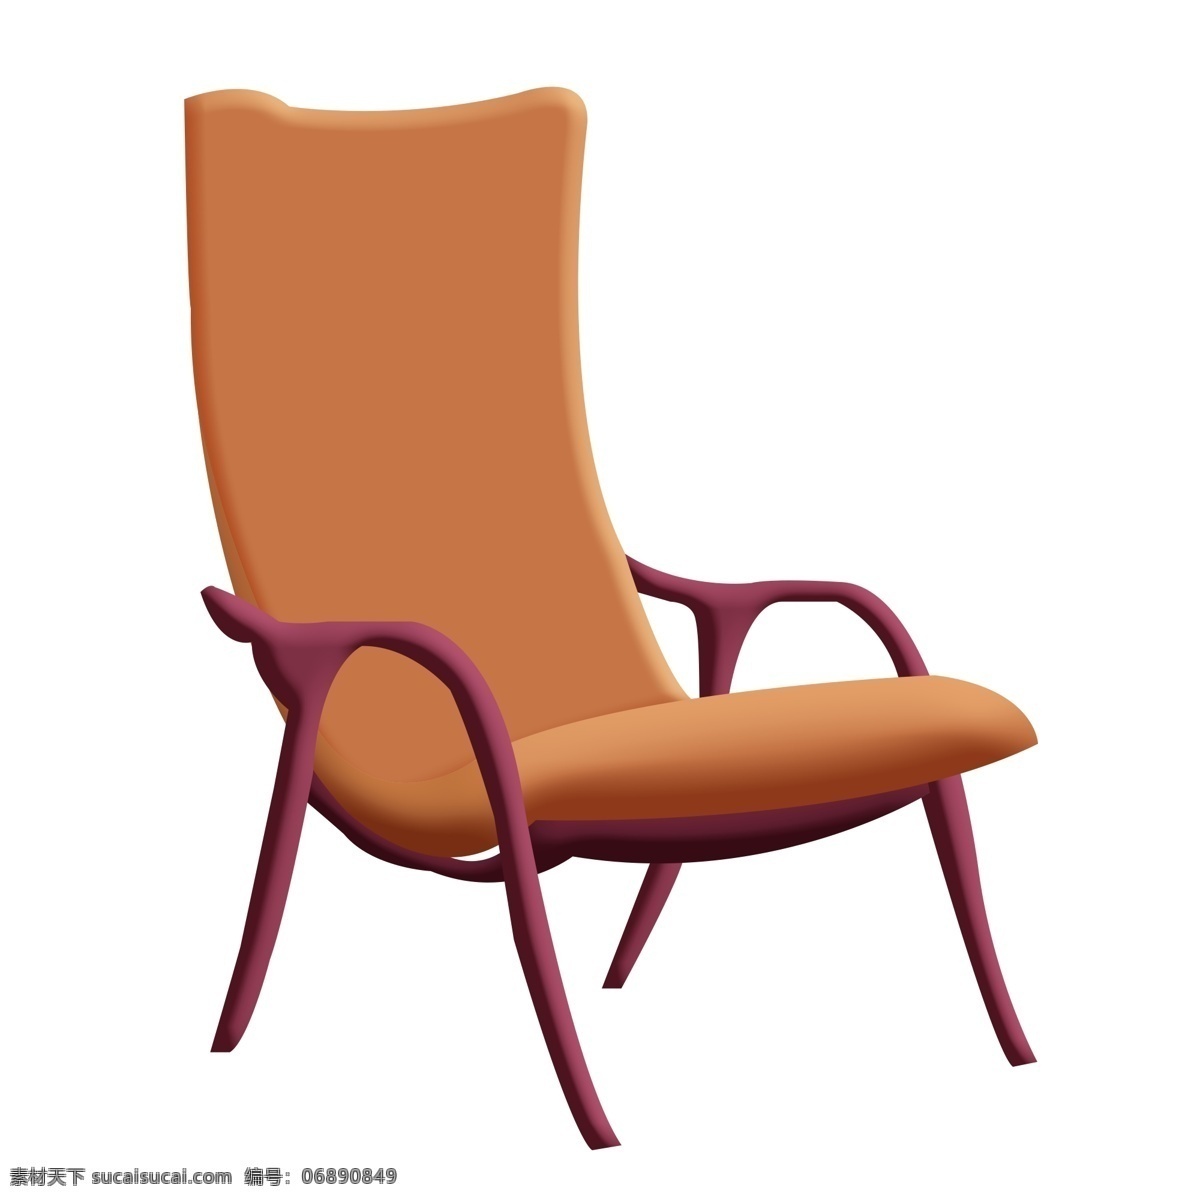 木质 沙发椅子 插图 木质椅子 一把椅子 家具 红色装饰 灰色 沙发椅子插图 靠背椅子 椅子